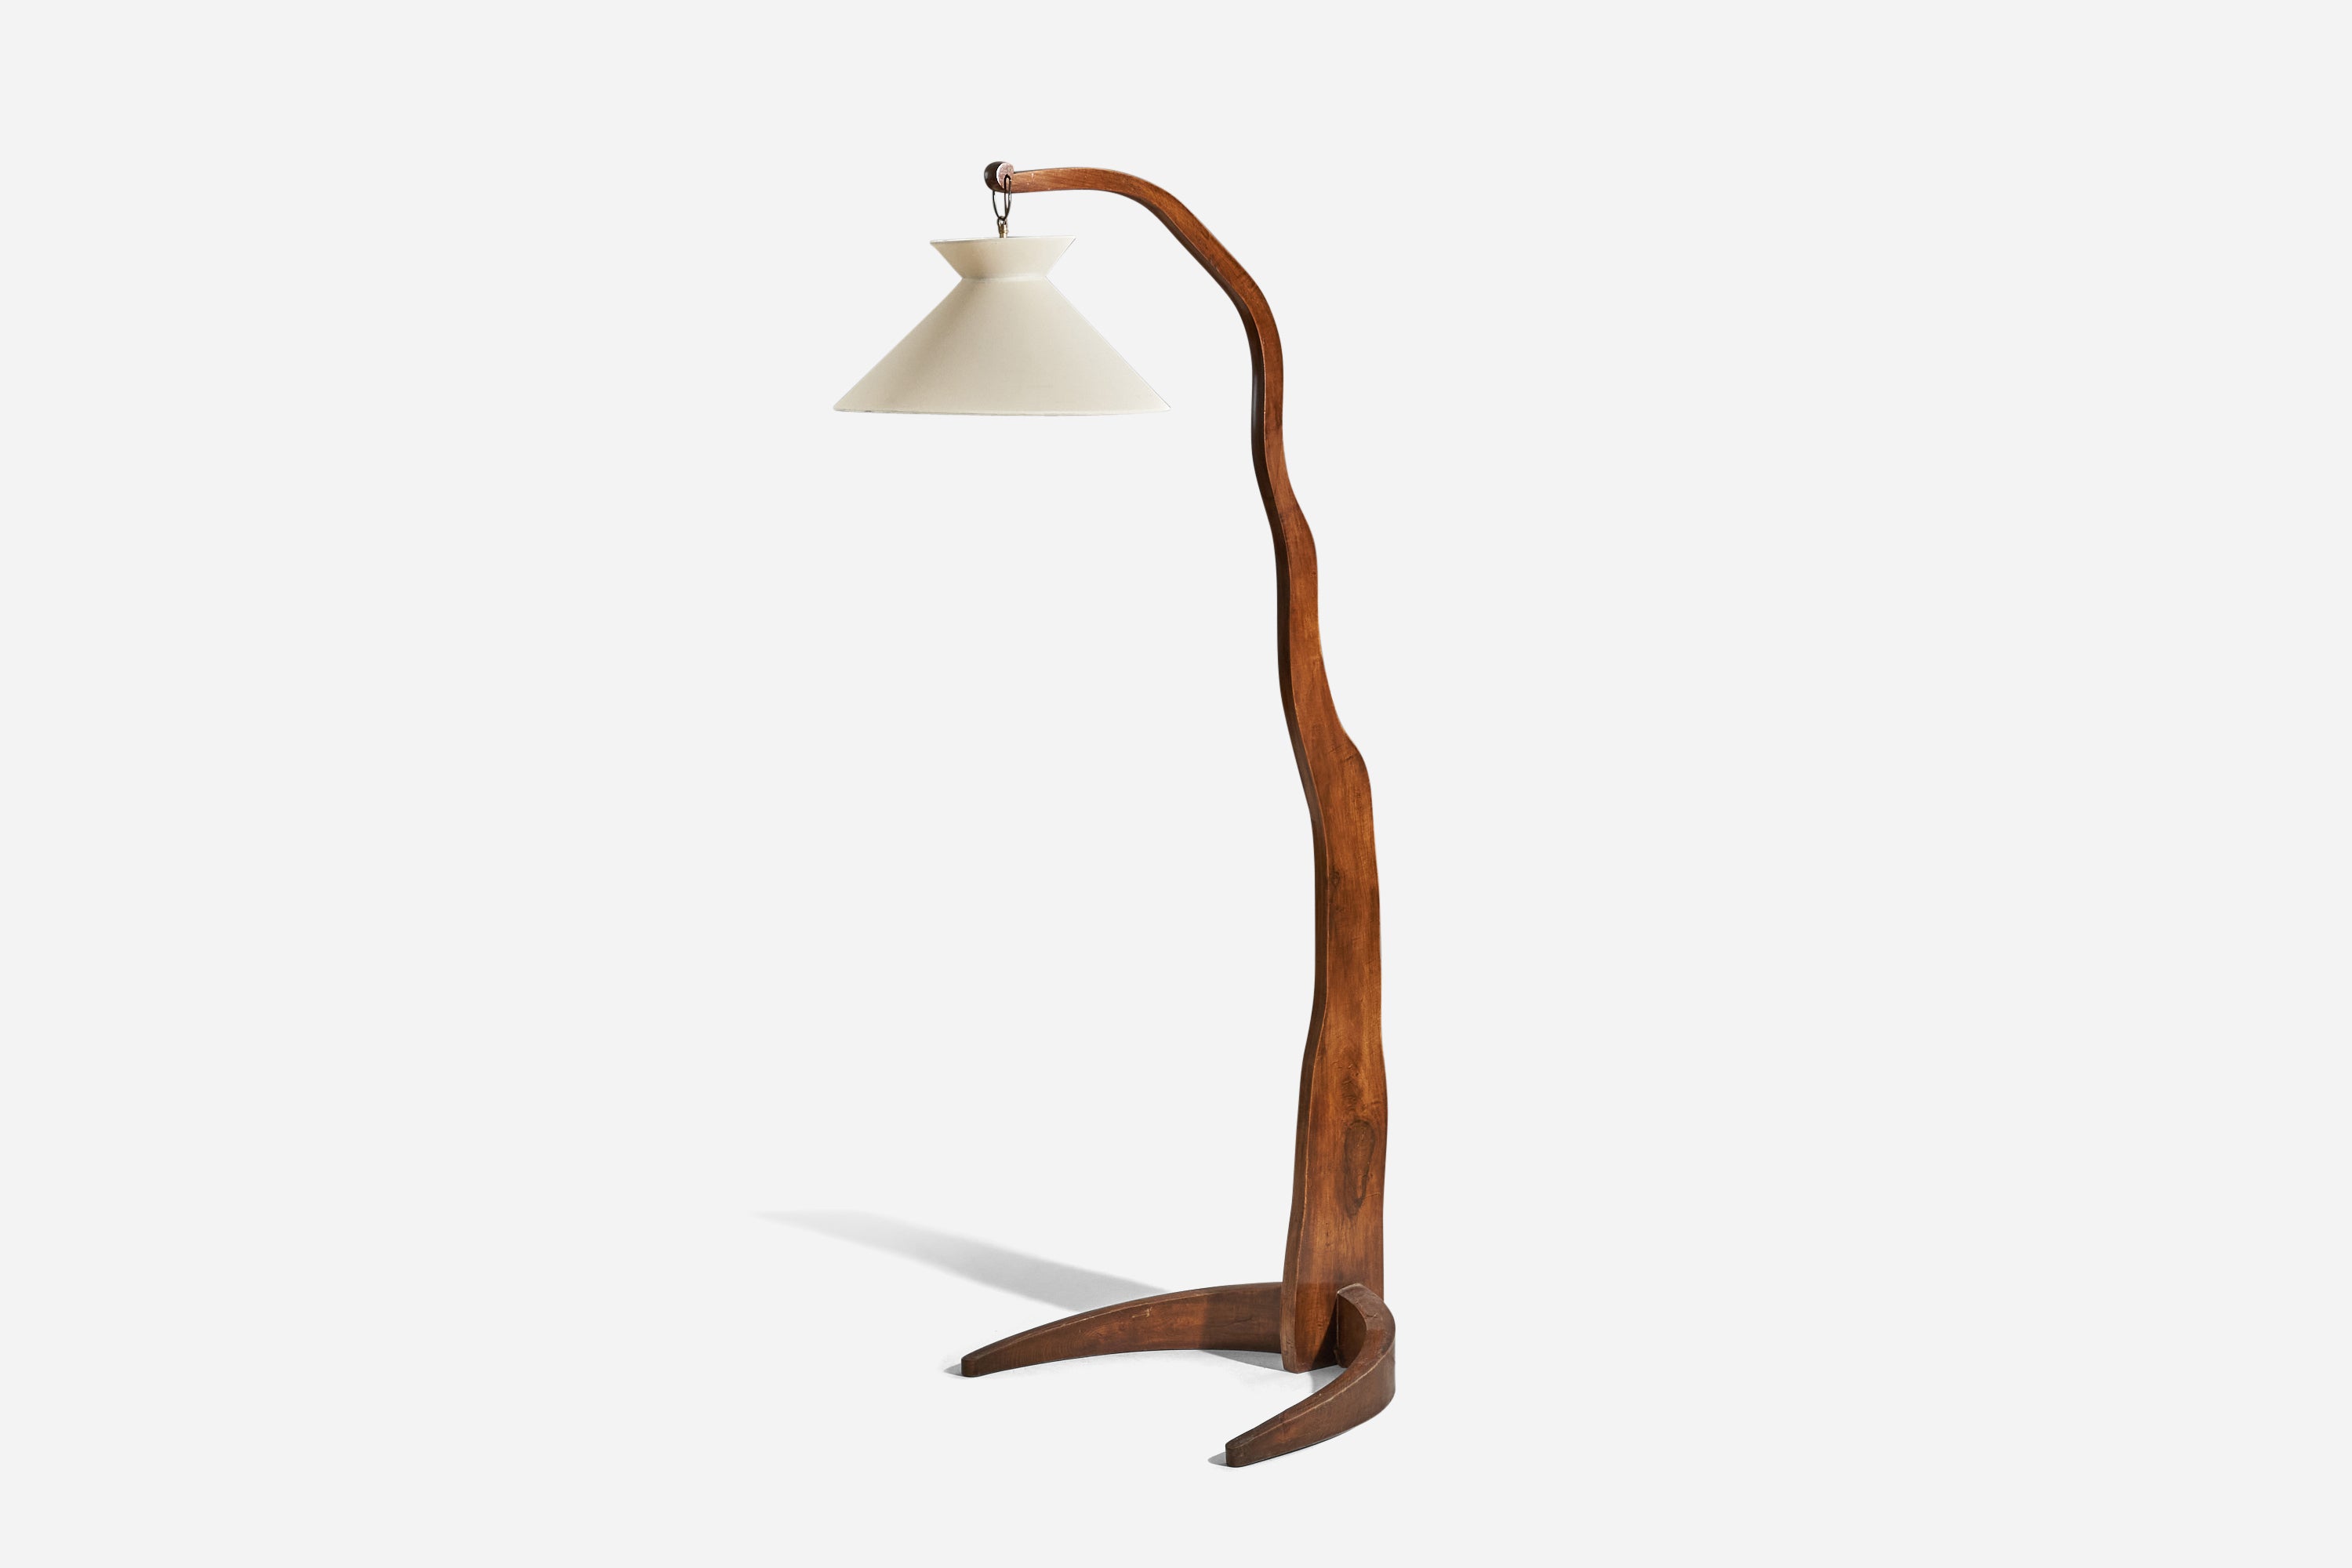 Lampadaire en bois et tissu conçu et produit en Italie, années 1940.

Vendu avec abat-jour. 
Les dimensions indiquées se rapportent au lampadaire avec abat-jour.